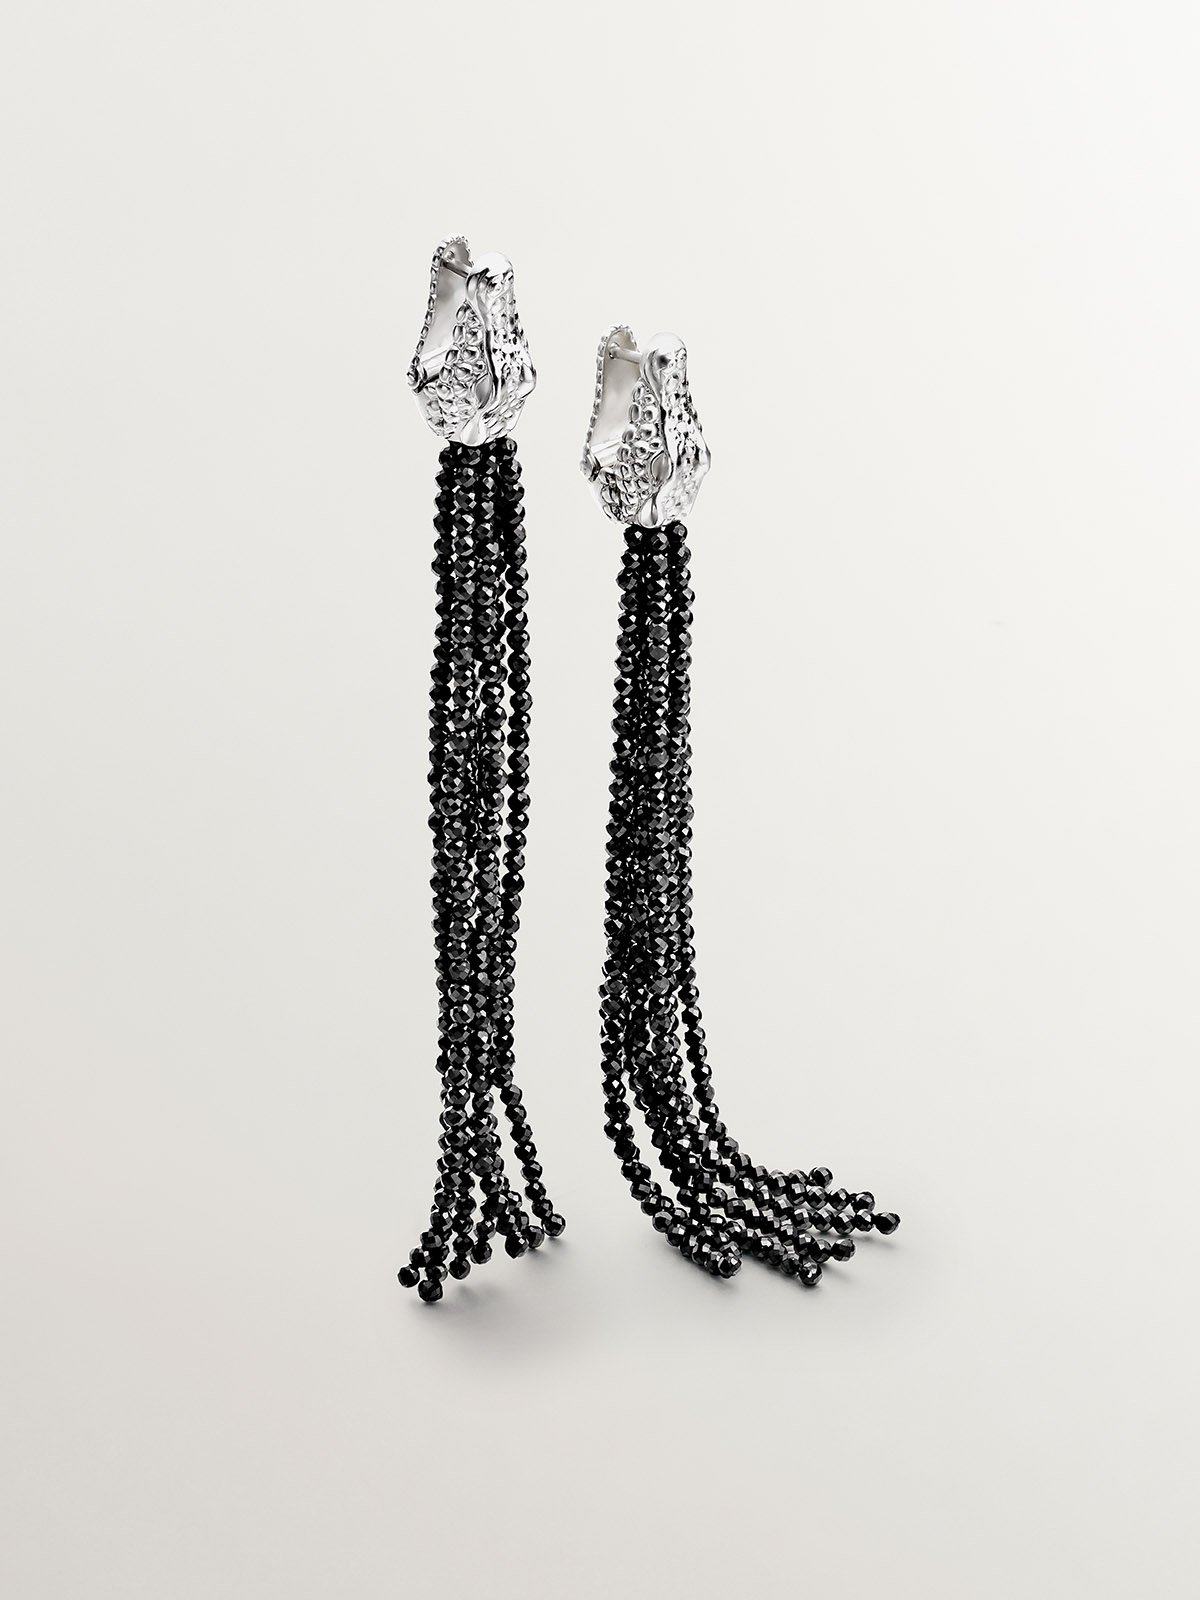 Longues boucles d'oreilles en argent 925 en forme de crocodile et de colonne vertébrale noire.